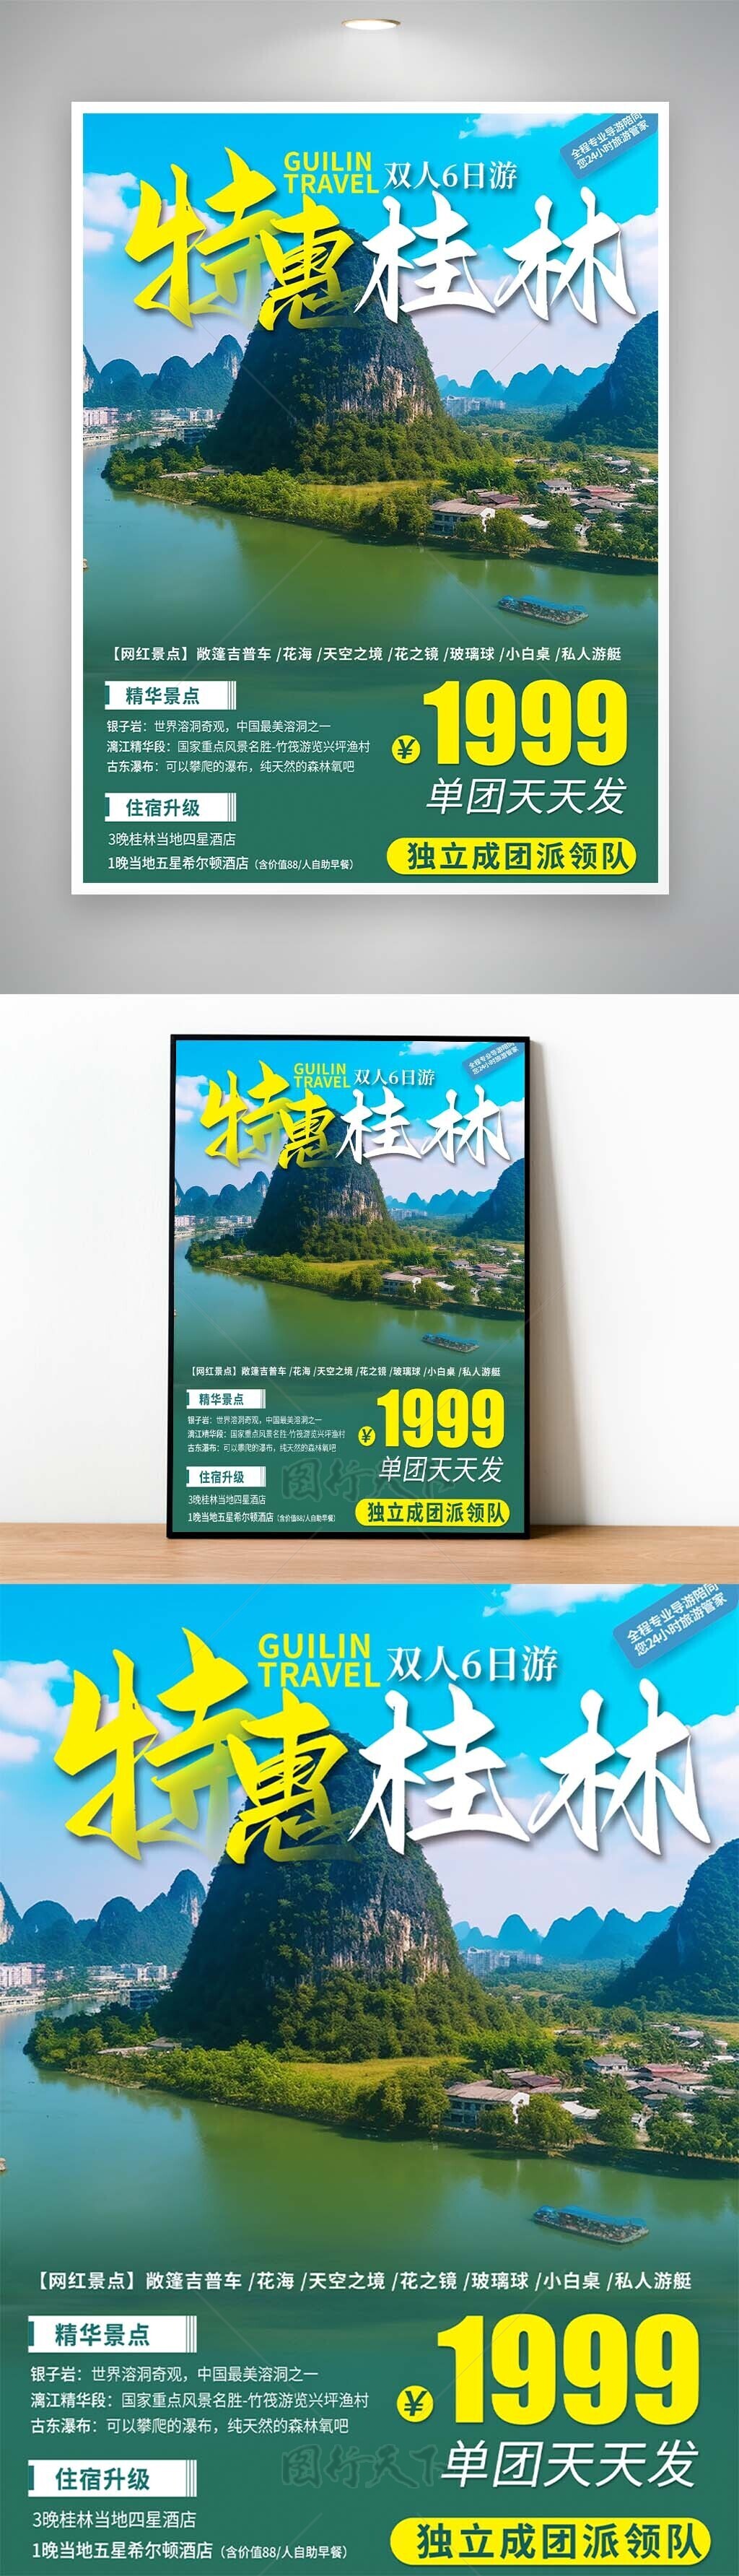 特惠桂林美景山水轻松行程文旅海报